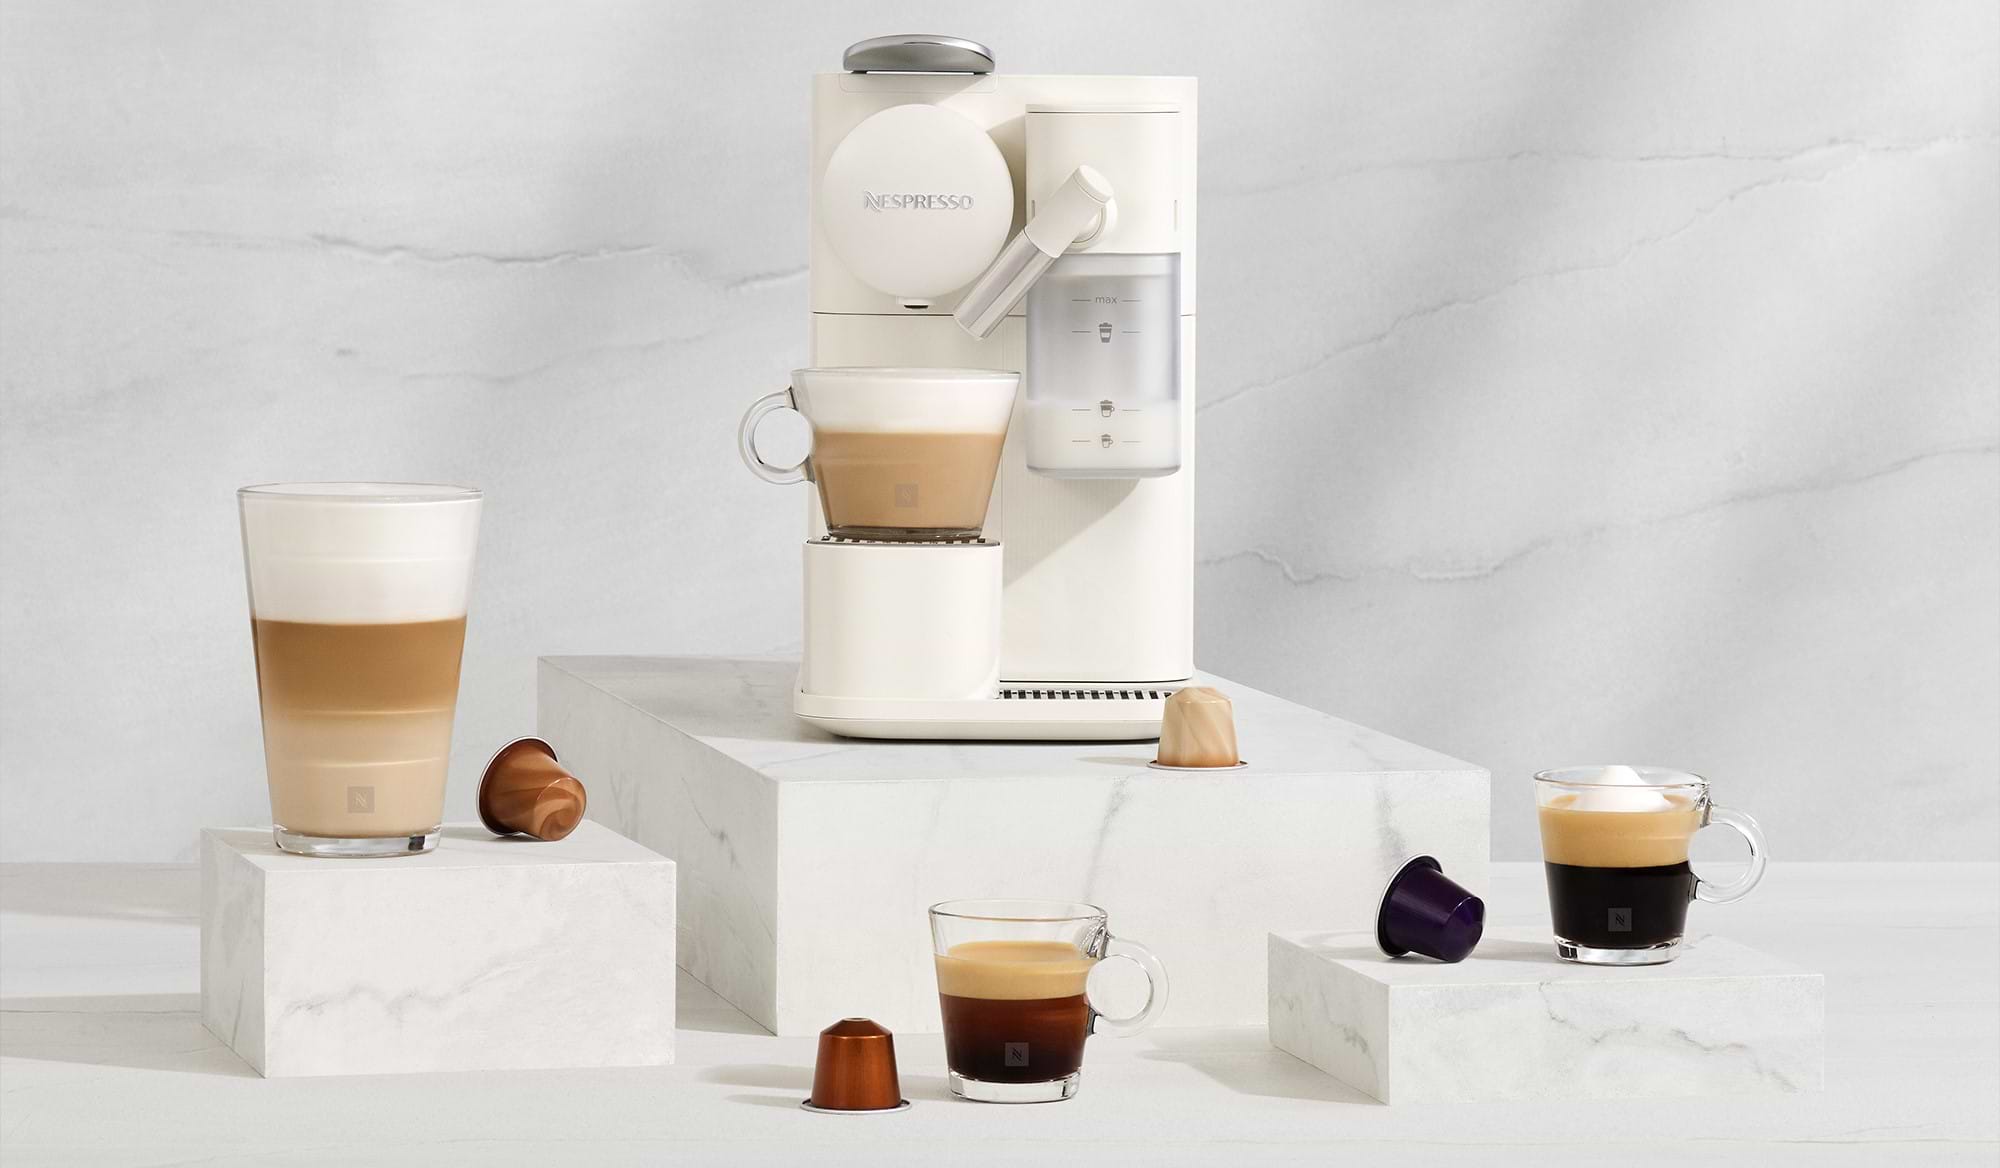 מכונת קפה Nespresso F121 Lattissima One - בצבע לבן אחריות ע"י היבואן הרשמי